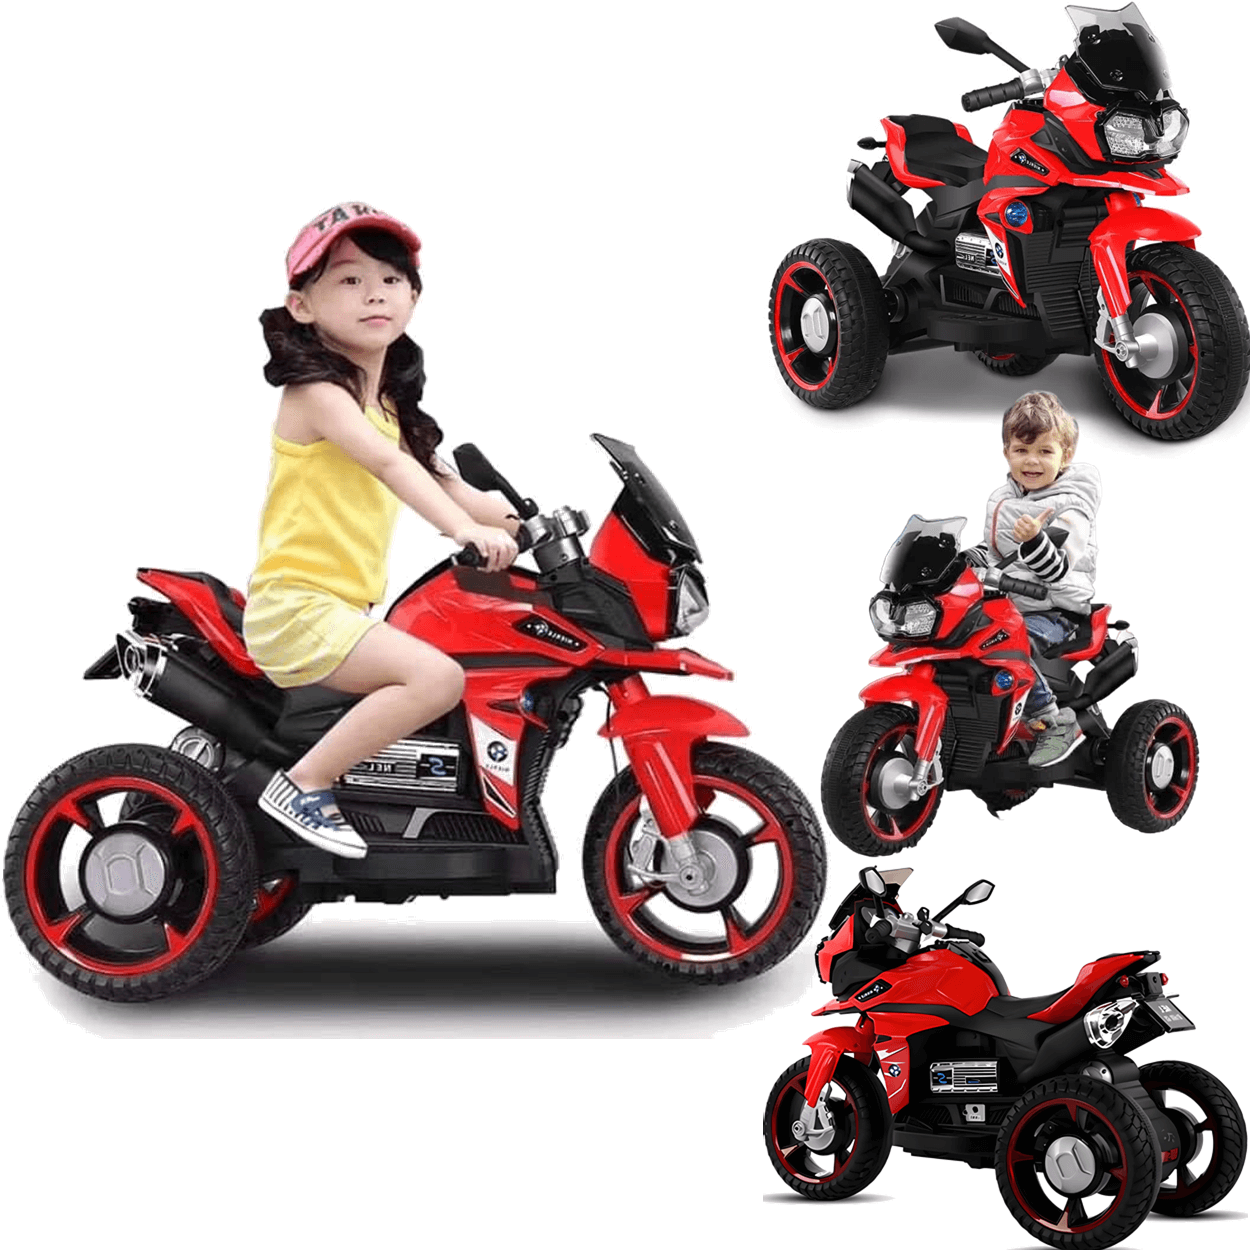 Moto Triciclo Eletrico Shiny Toys Nierle R1600 Gs 6v Vermelha - 2